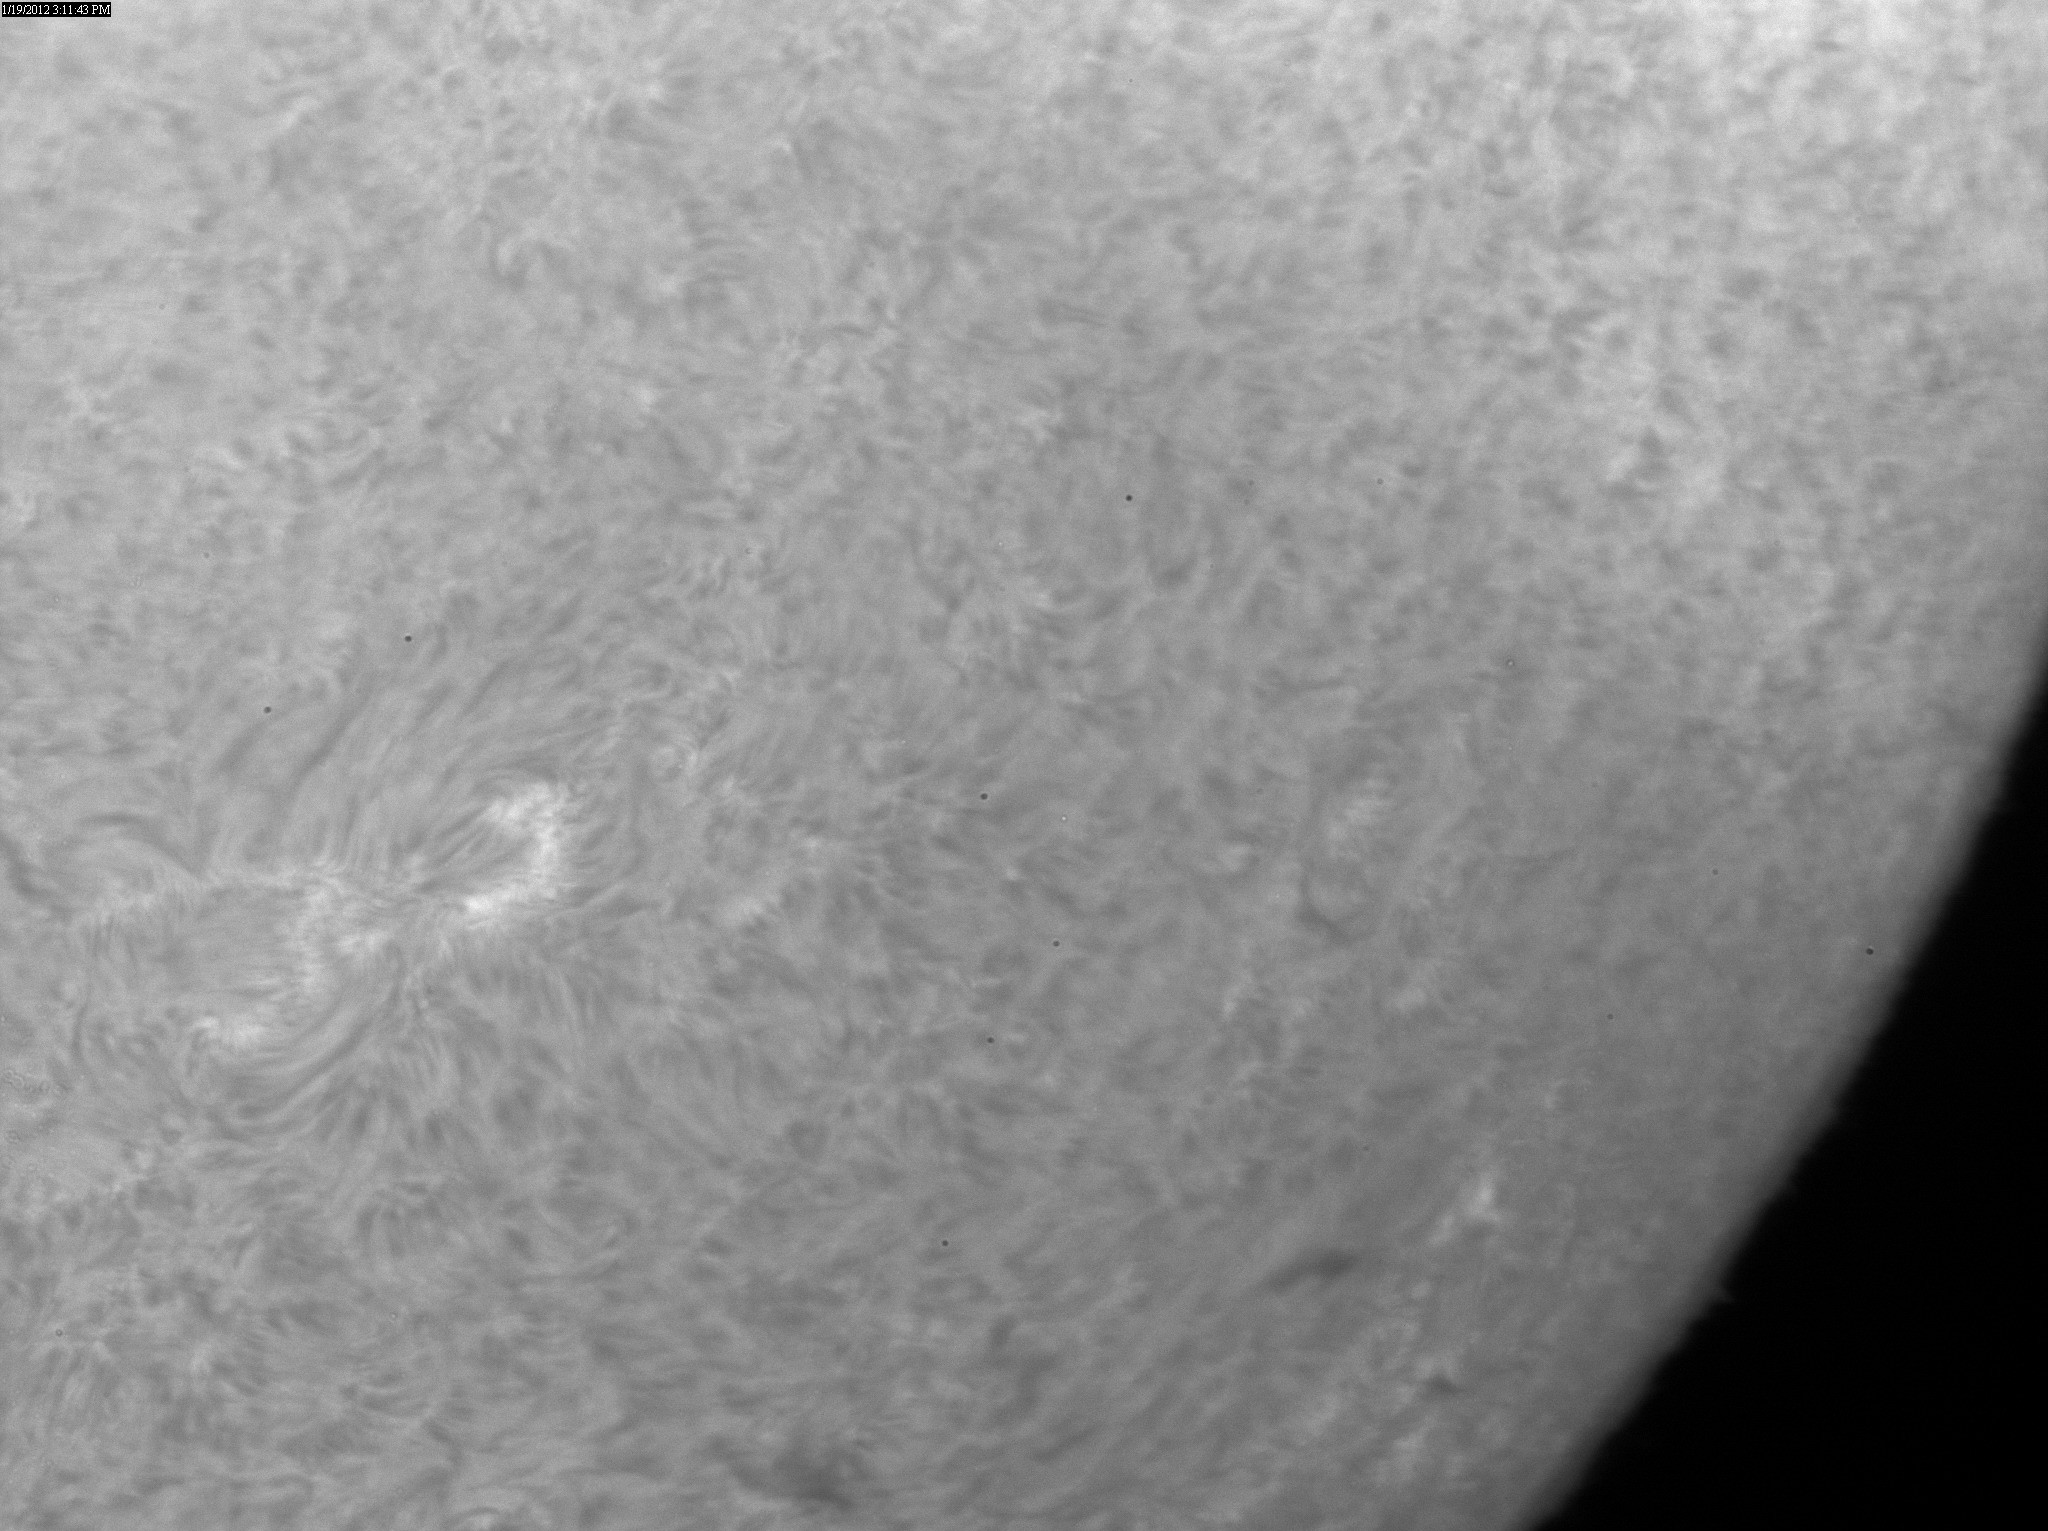 2012 Jan 19 Sun - AR11399-11403, 11397 and 11406